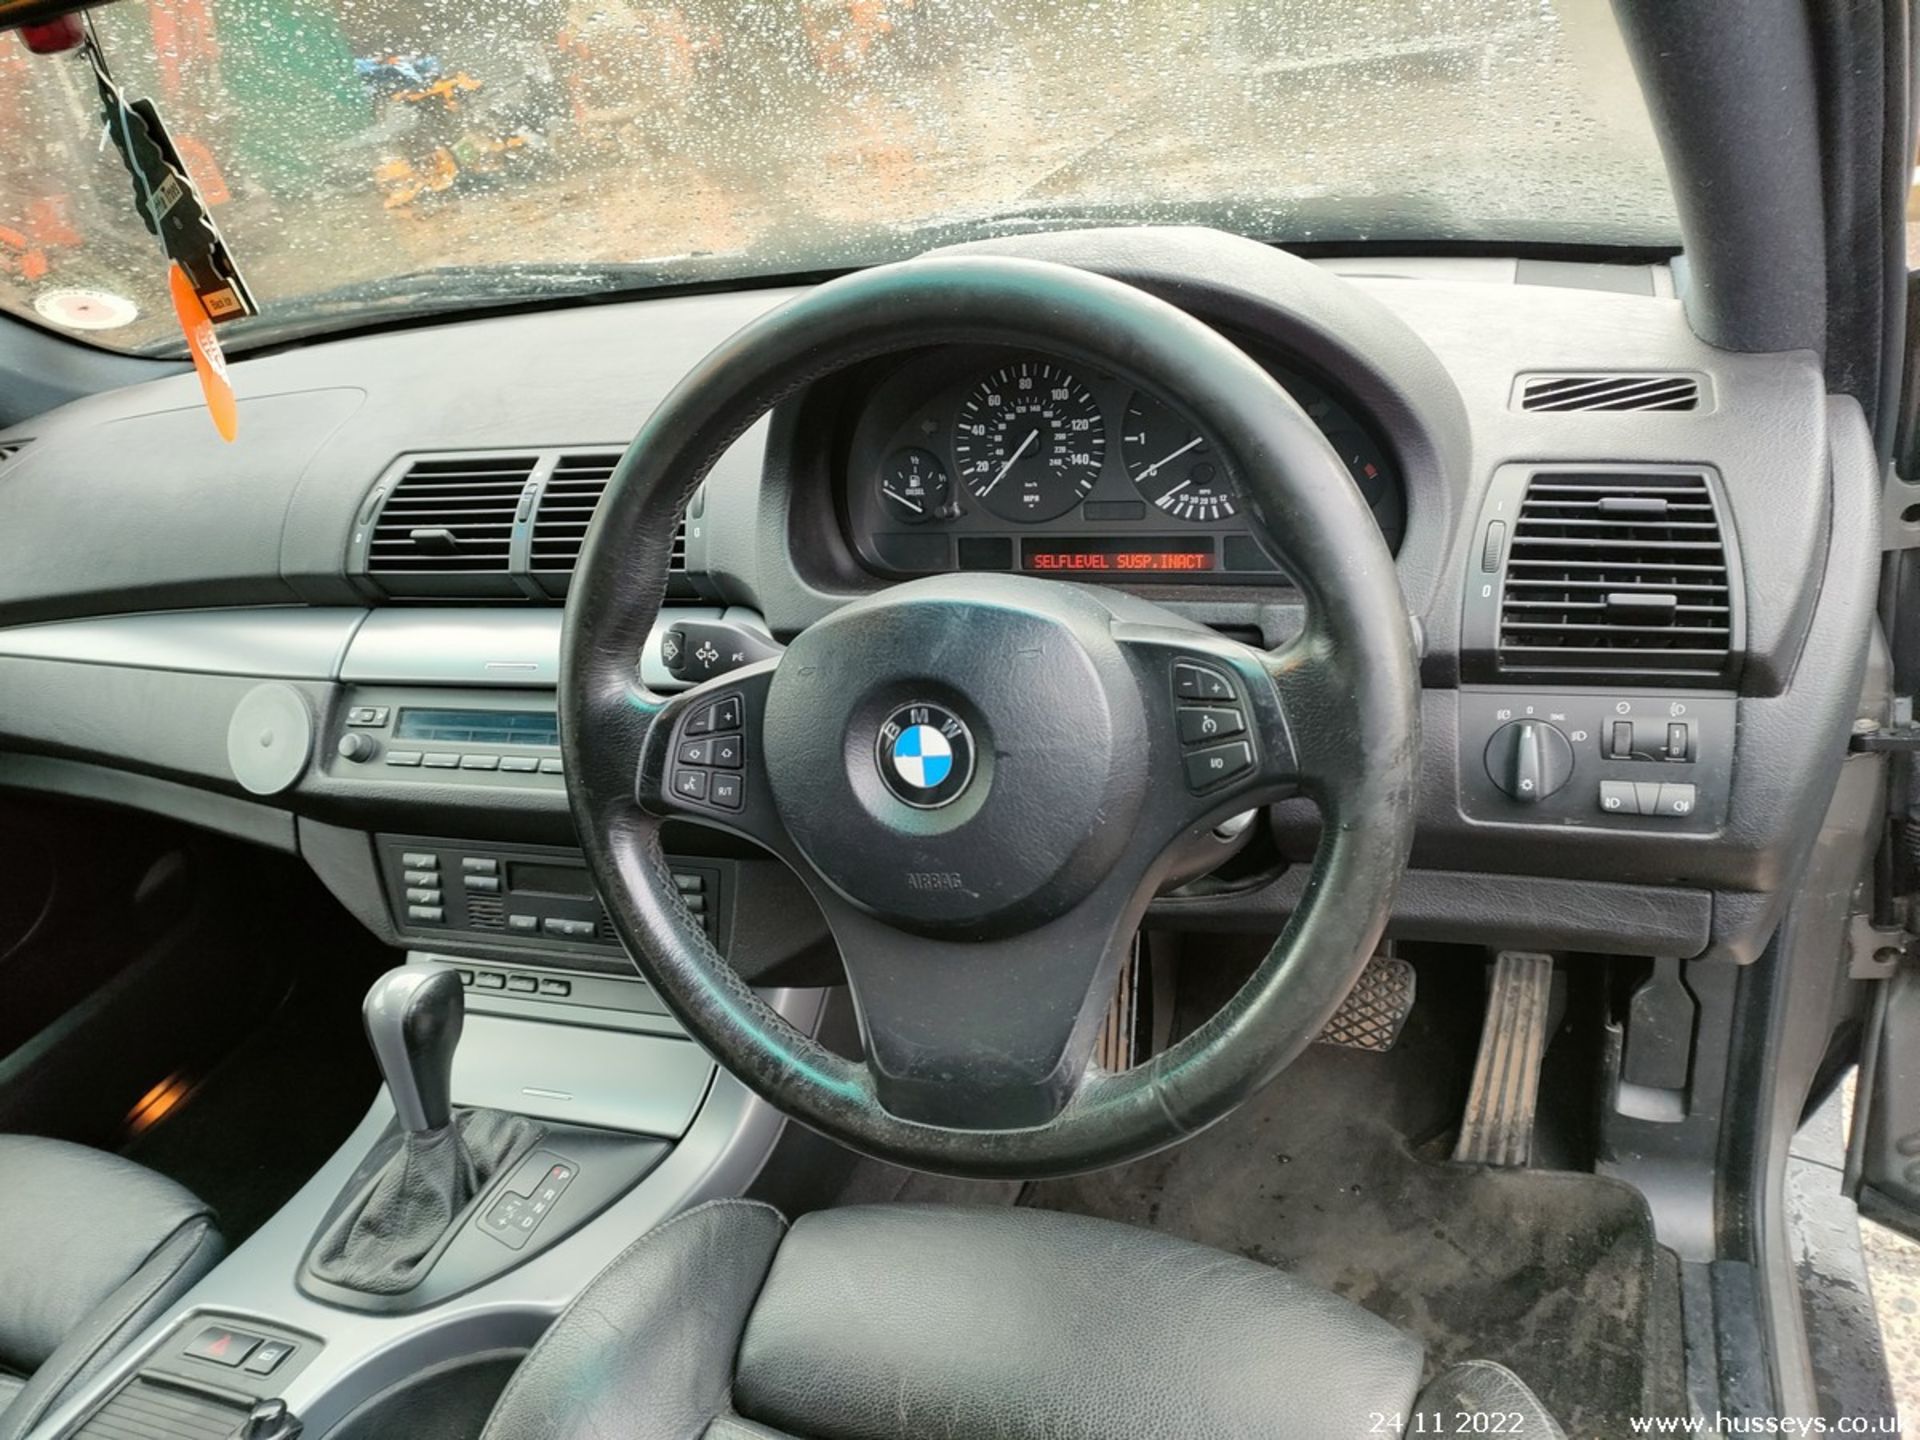 03/53 BMW X5 SPORT D AUTO - 2993cc 5dr Estate (Grey, 130k) - Image 23 of 27